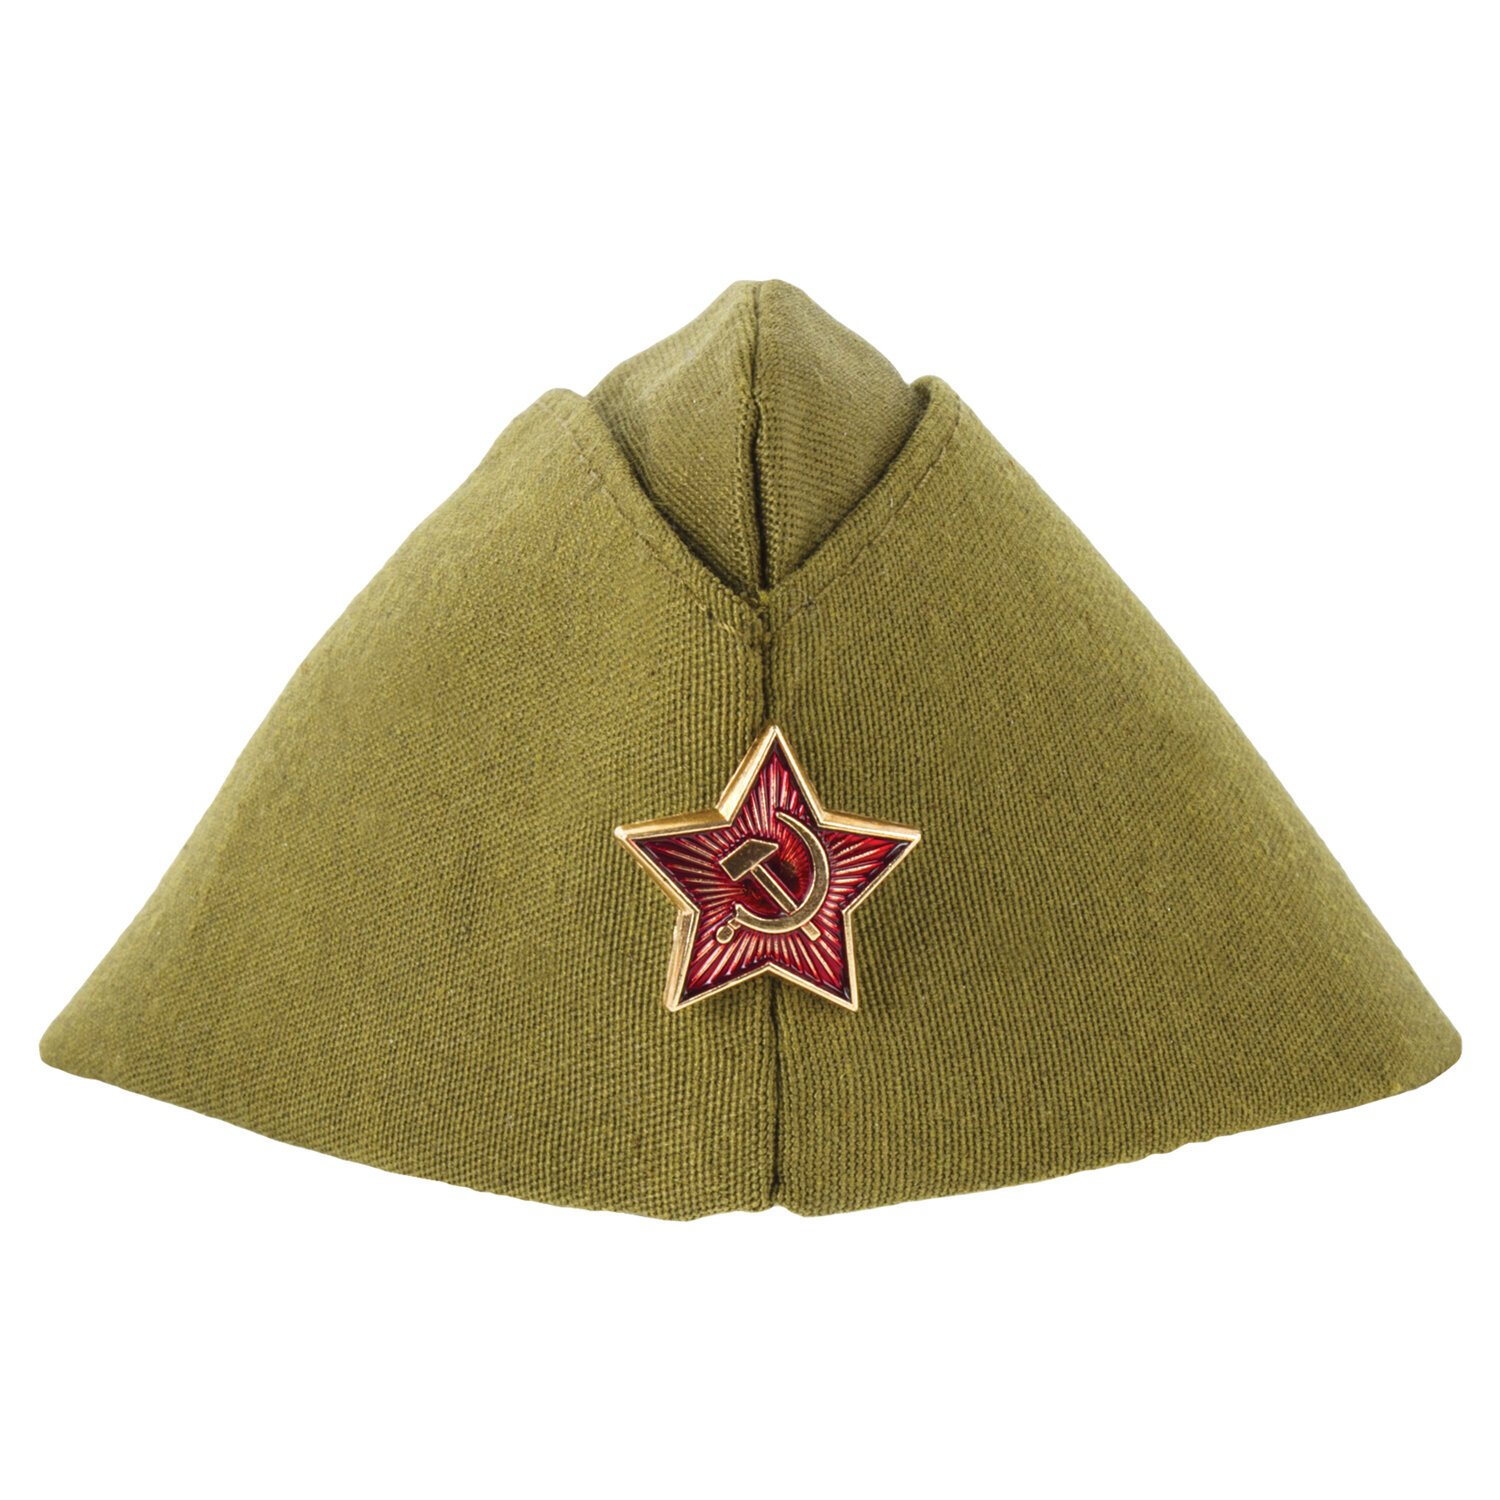 Пилотка Военная металлическая красная звезда р-р универсальный пл11